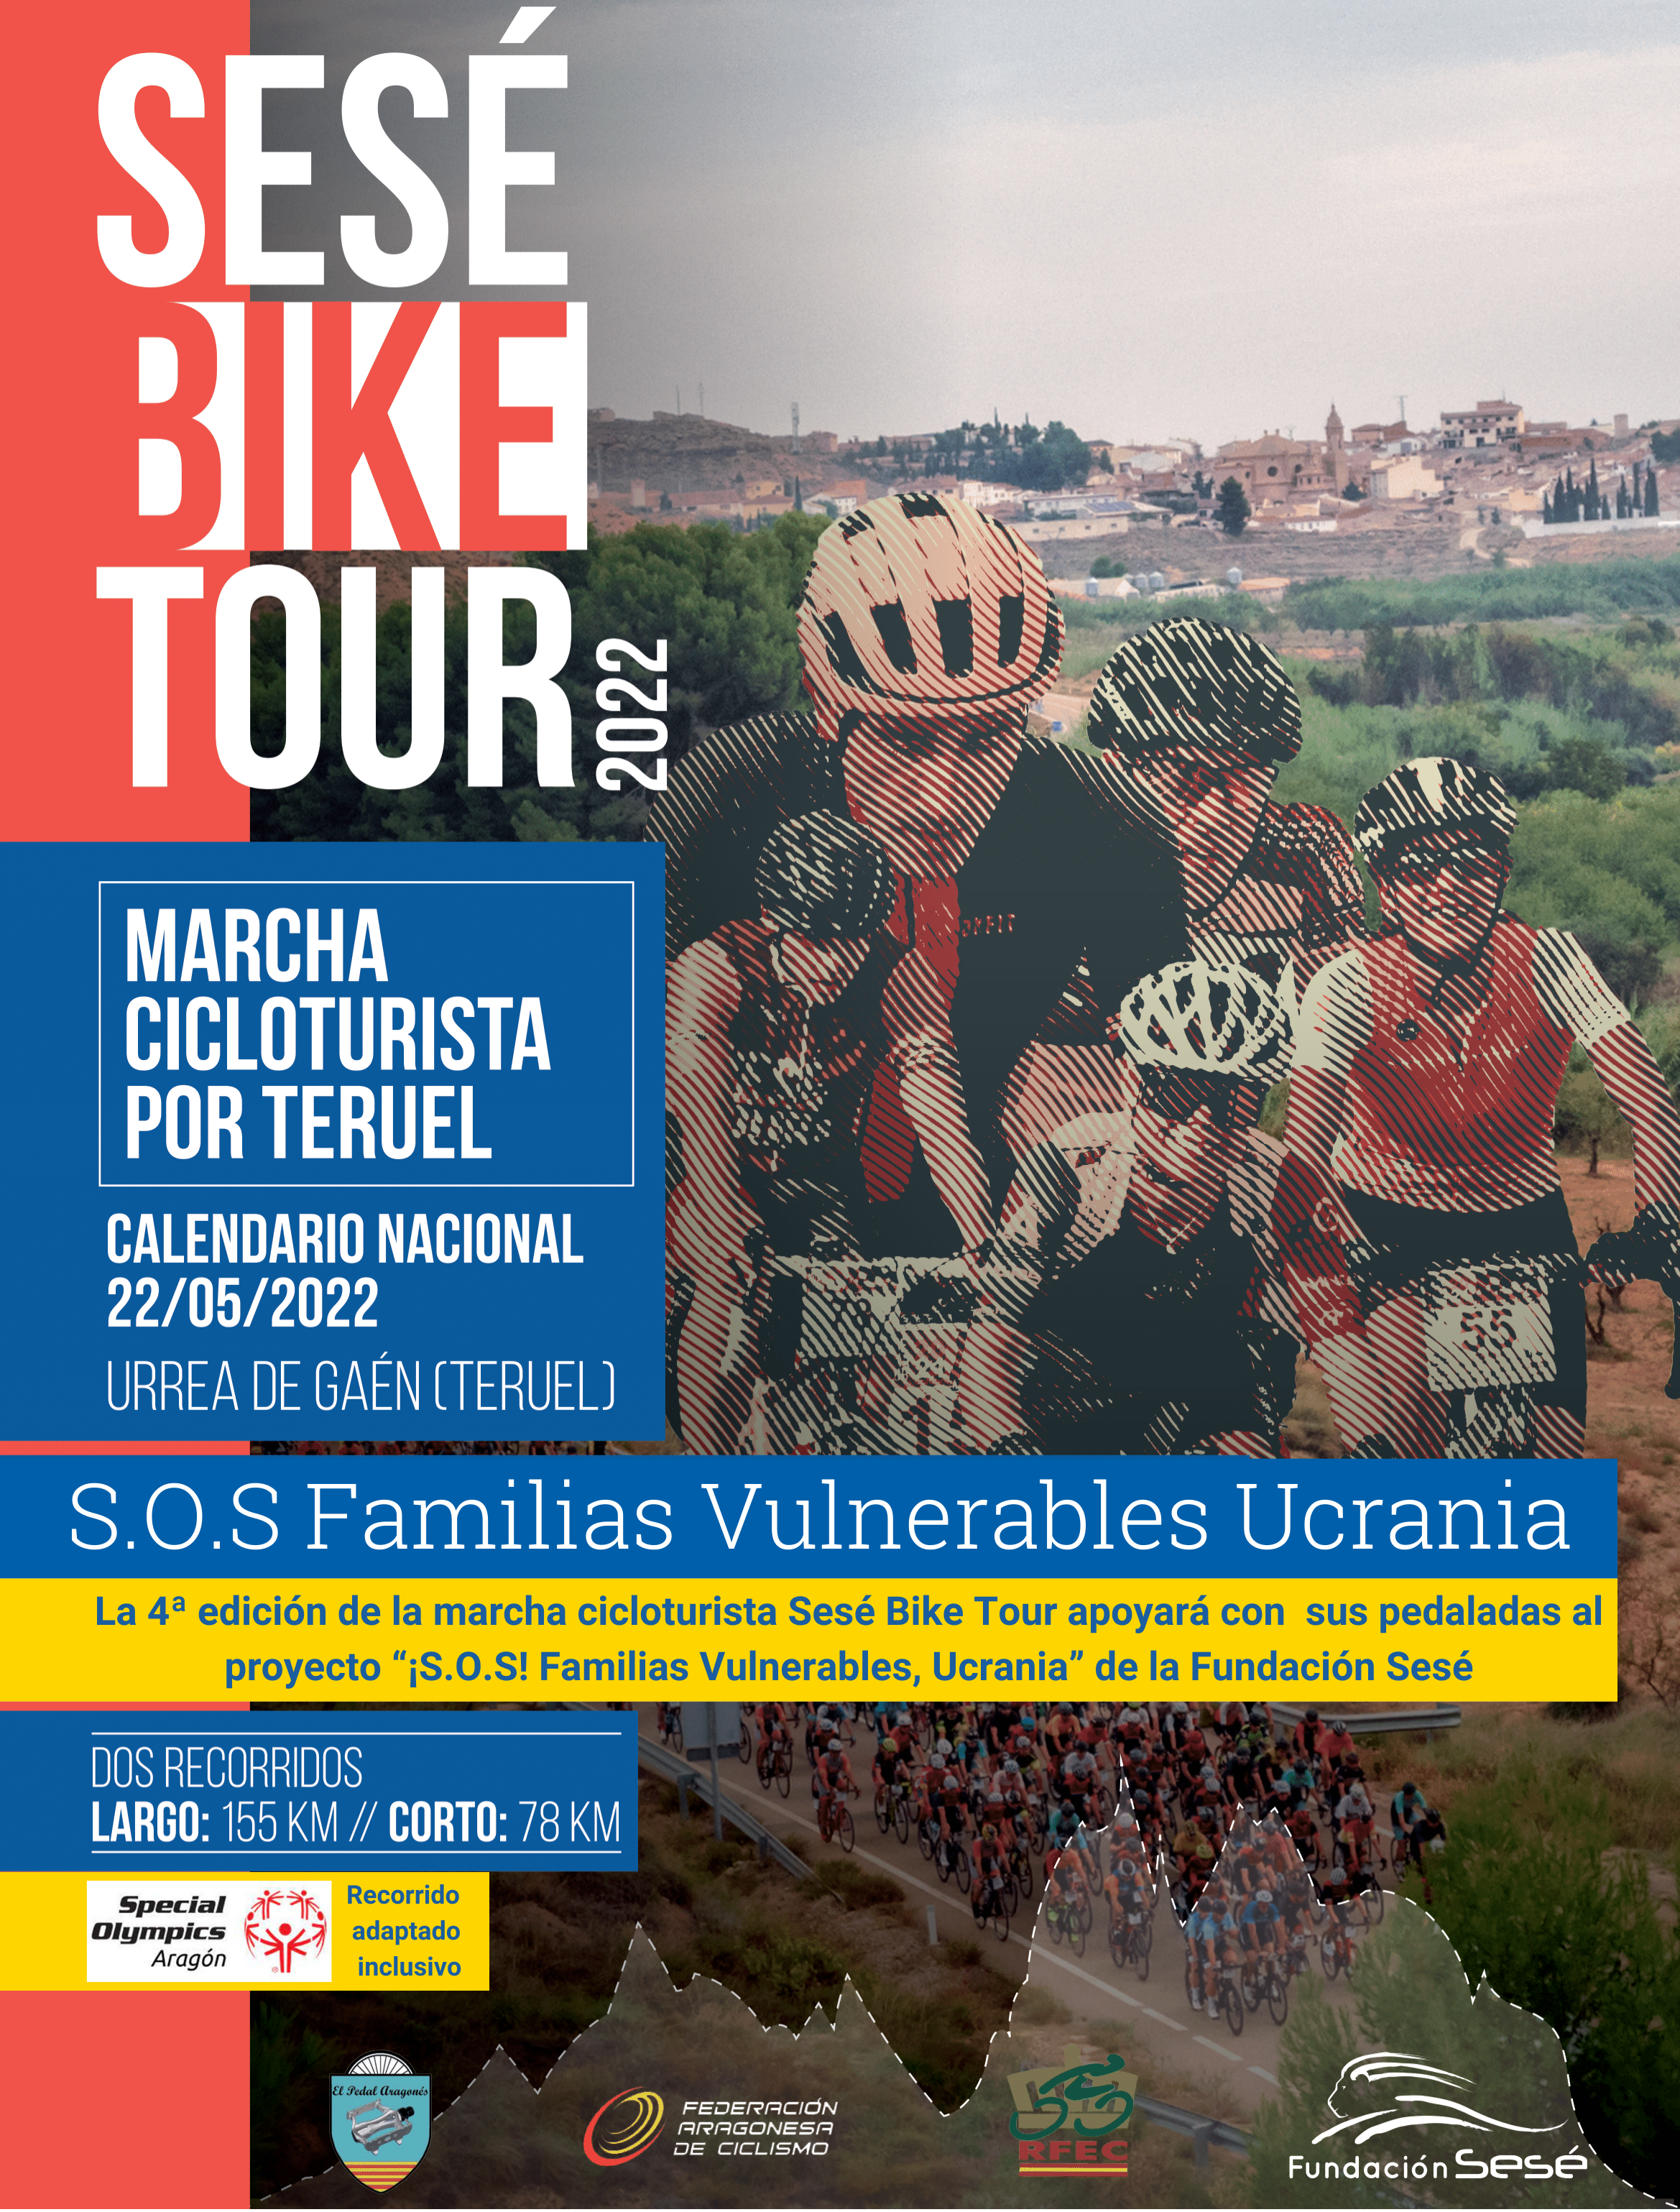 La 4ª edición de la Sesé Bike Tour se refuerza con la presencia de los ciclistas Miguel Induráin, Pruden Induráin, Carlos Hernández y Ángel Vicioso